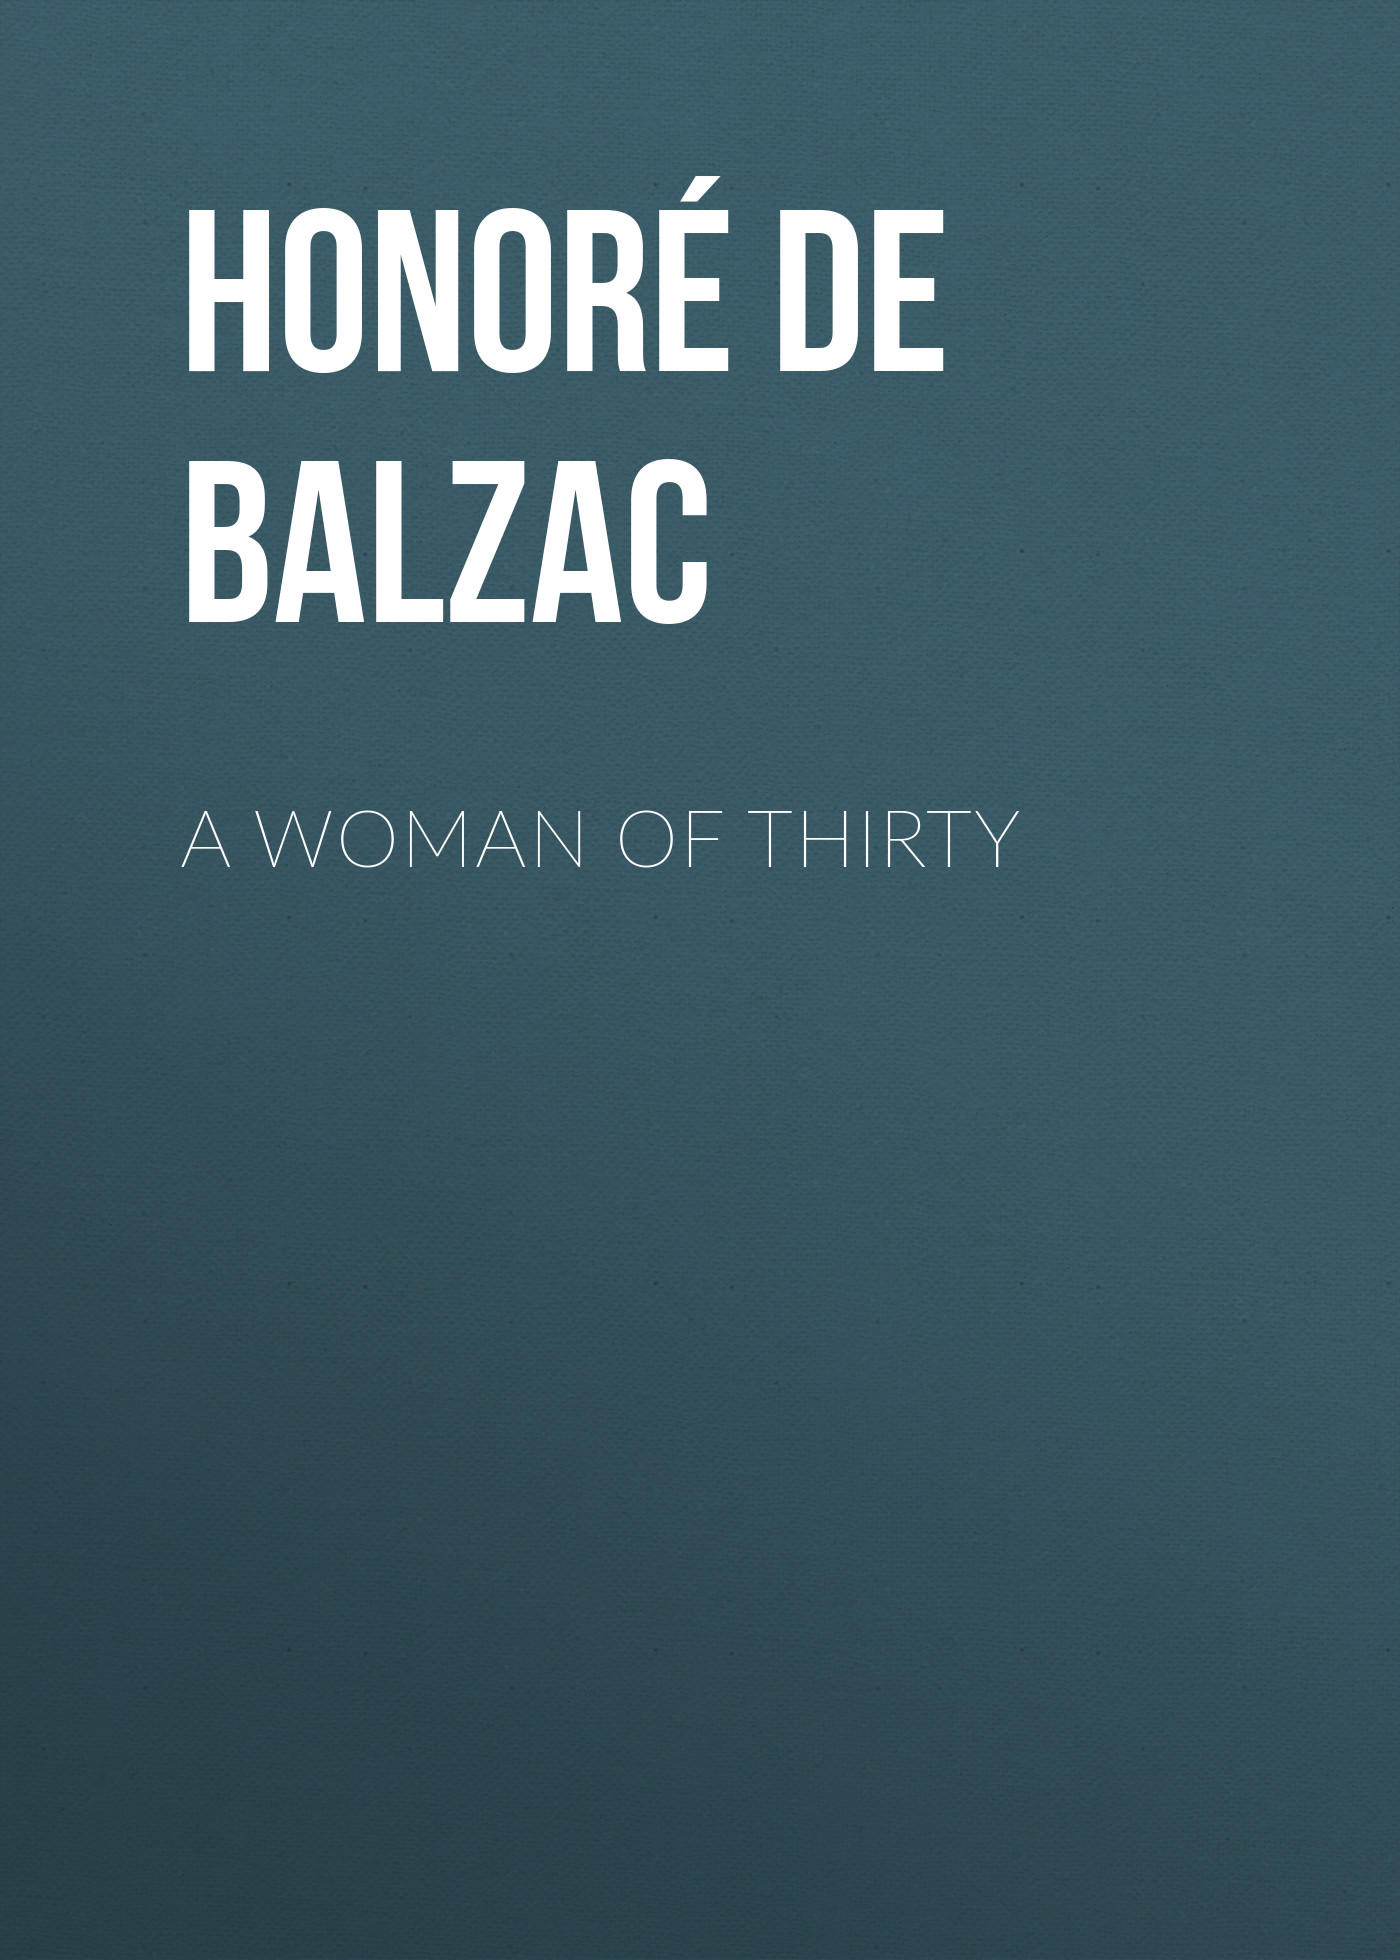 Книга A Woman of Thirty из серии , созданная Honoré Balzac, может относится к жанру Литература 19 века, Зарубежная старинная литература, Зарубежная классика. Стоимость электронной книги A Woman of Thirty с идентификатором 25020011 составляет 0 руб.